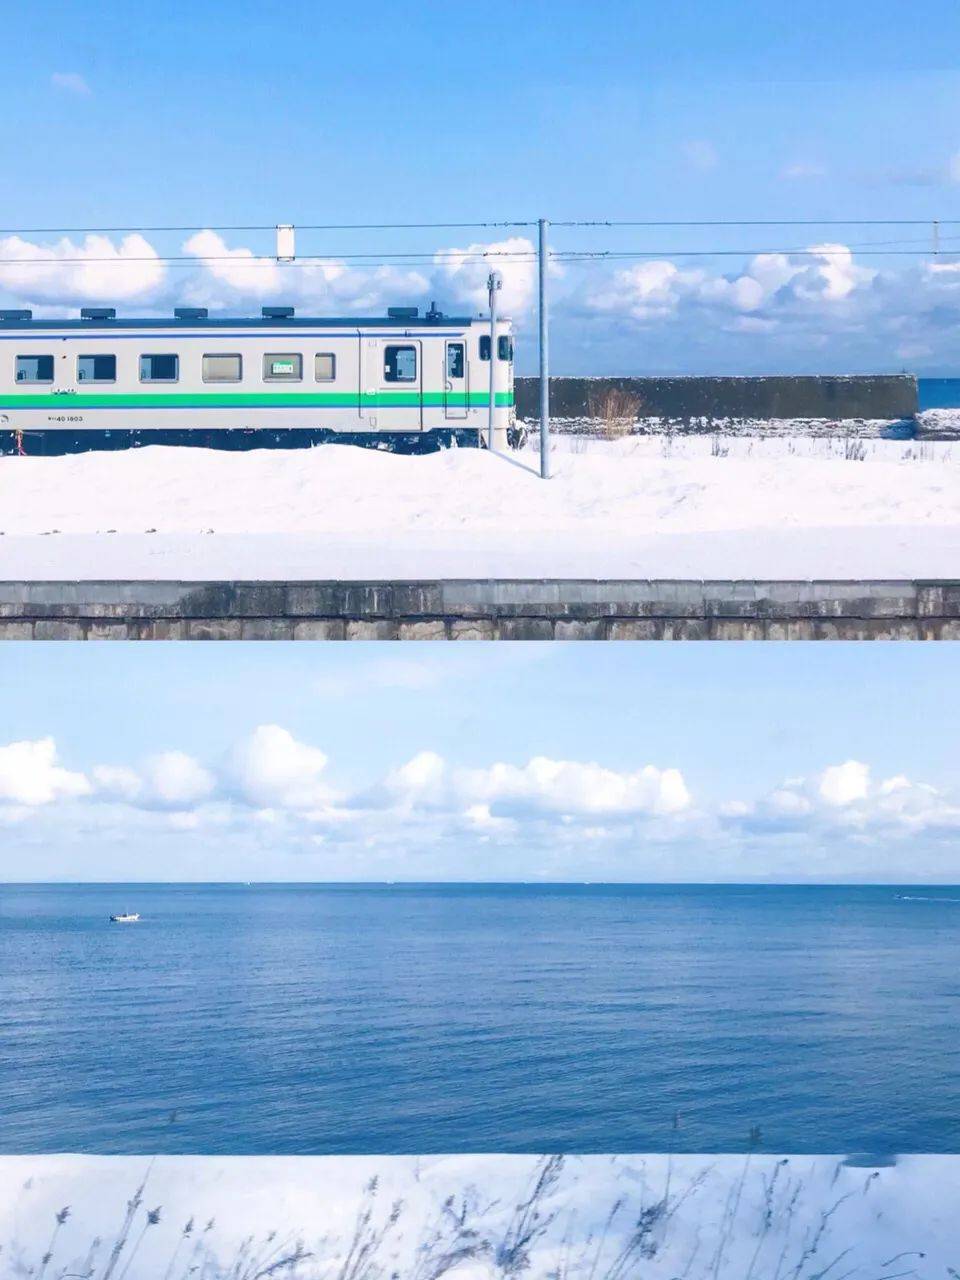 等一个人，陪我去北海道看雪